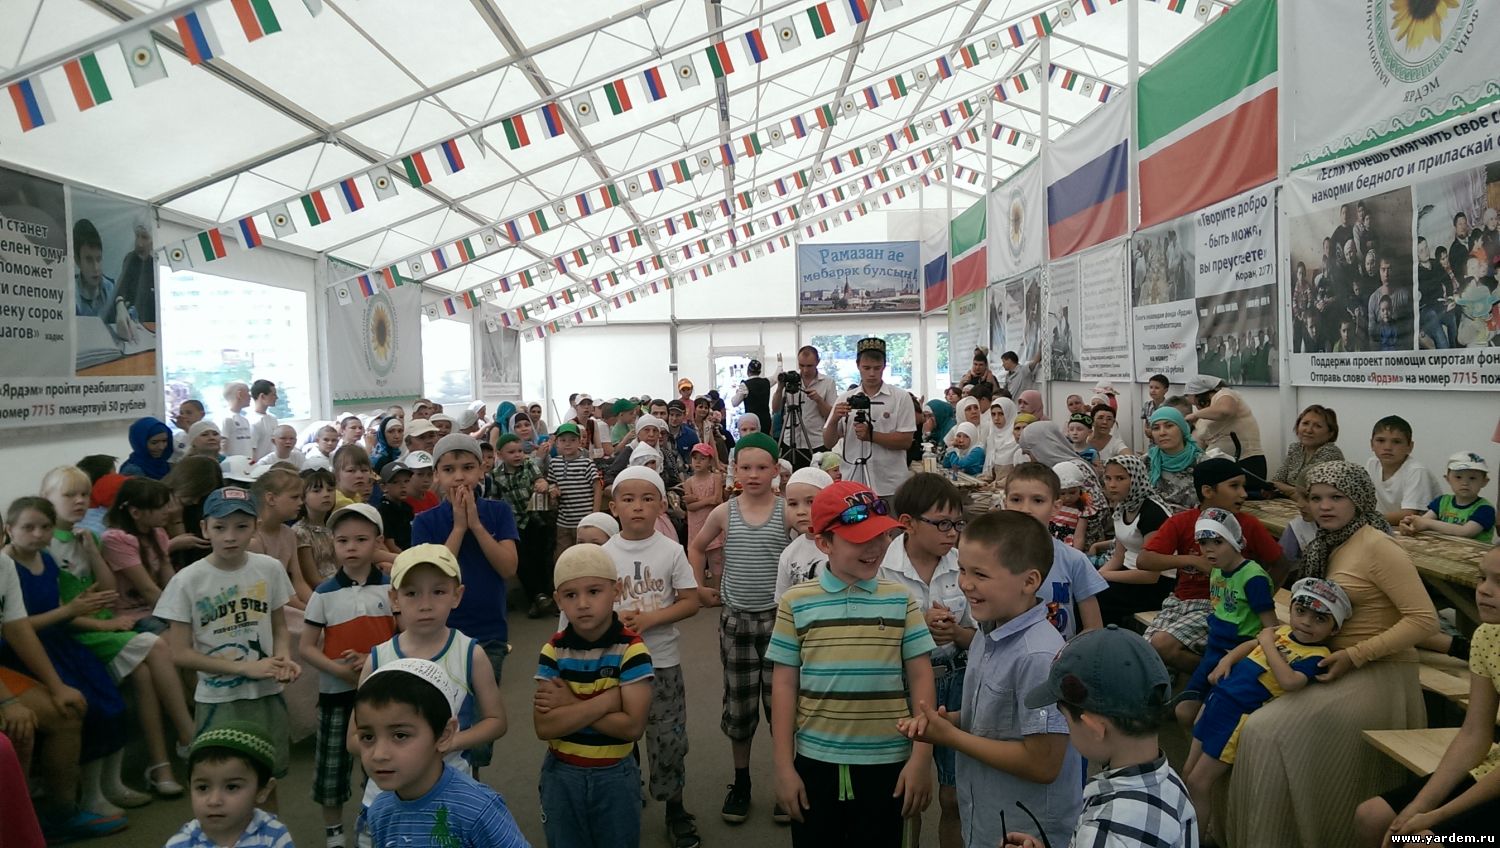 Площадка мечети "Ярдэм" собрала детей Казани. Общие новости